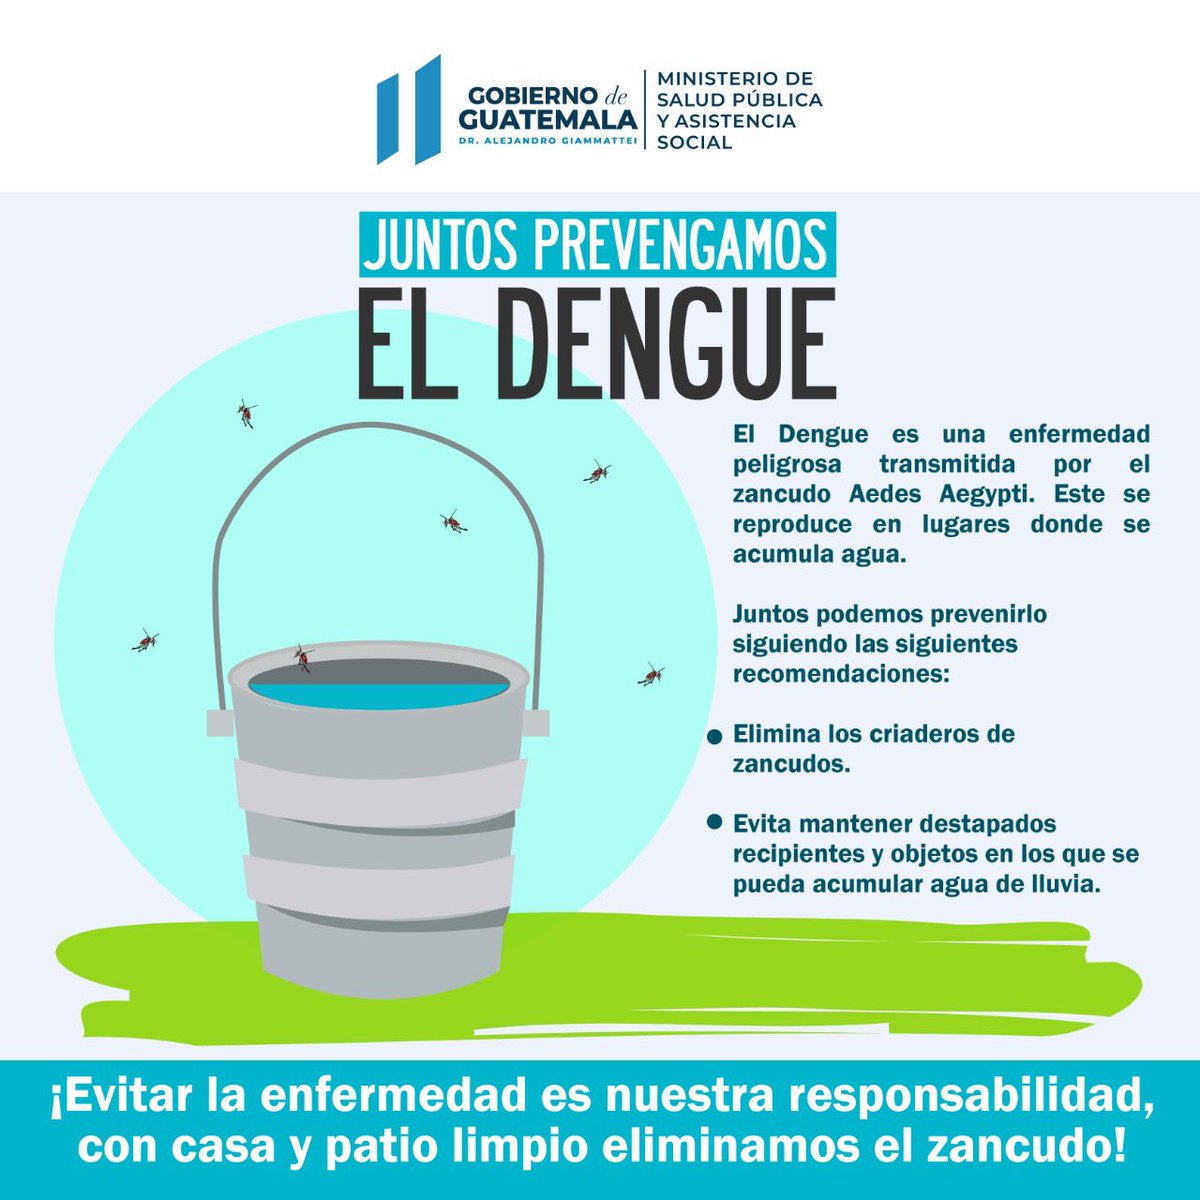 Degenerar cocina director Ministerio de Salud Pública al Twitter: "Juntos podemos prevenir el Dengue  siguiendo las siguientes recomendaciones: 👇🏻 #PrevengamosEnfermedades  #MSPAS https://t.co/0yP5ZvyLuy" / Twitter